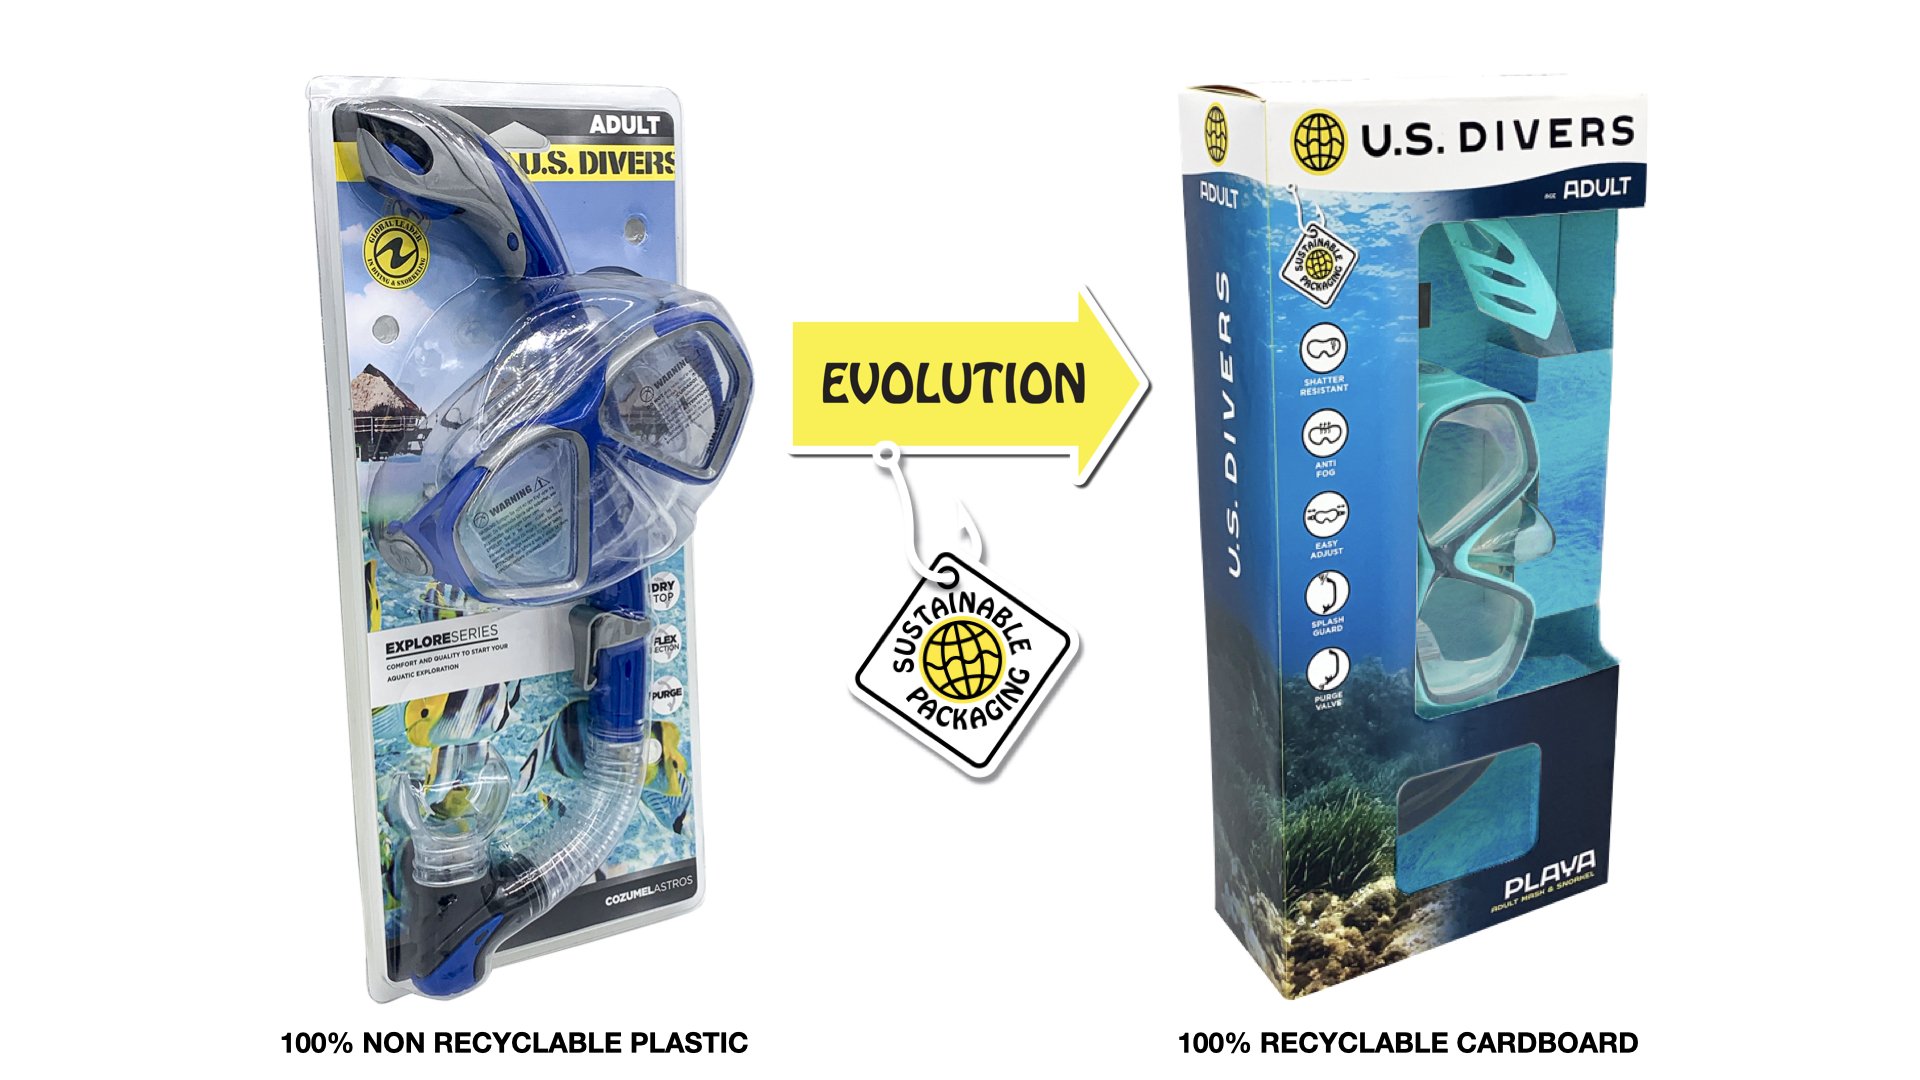 U.S. Divers Packaging